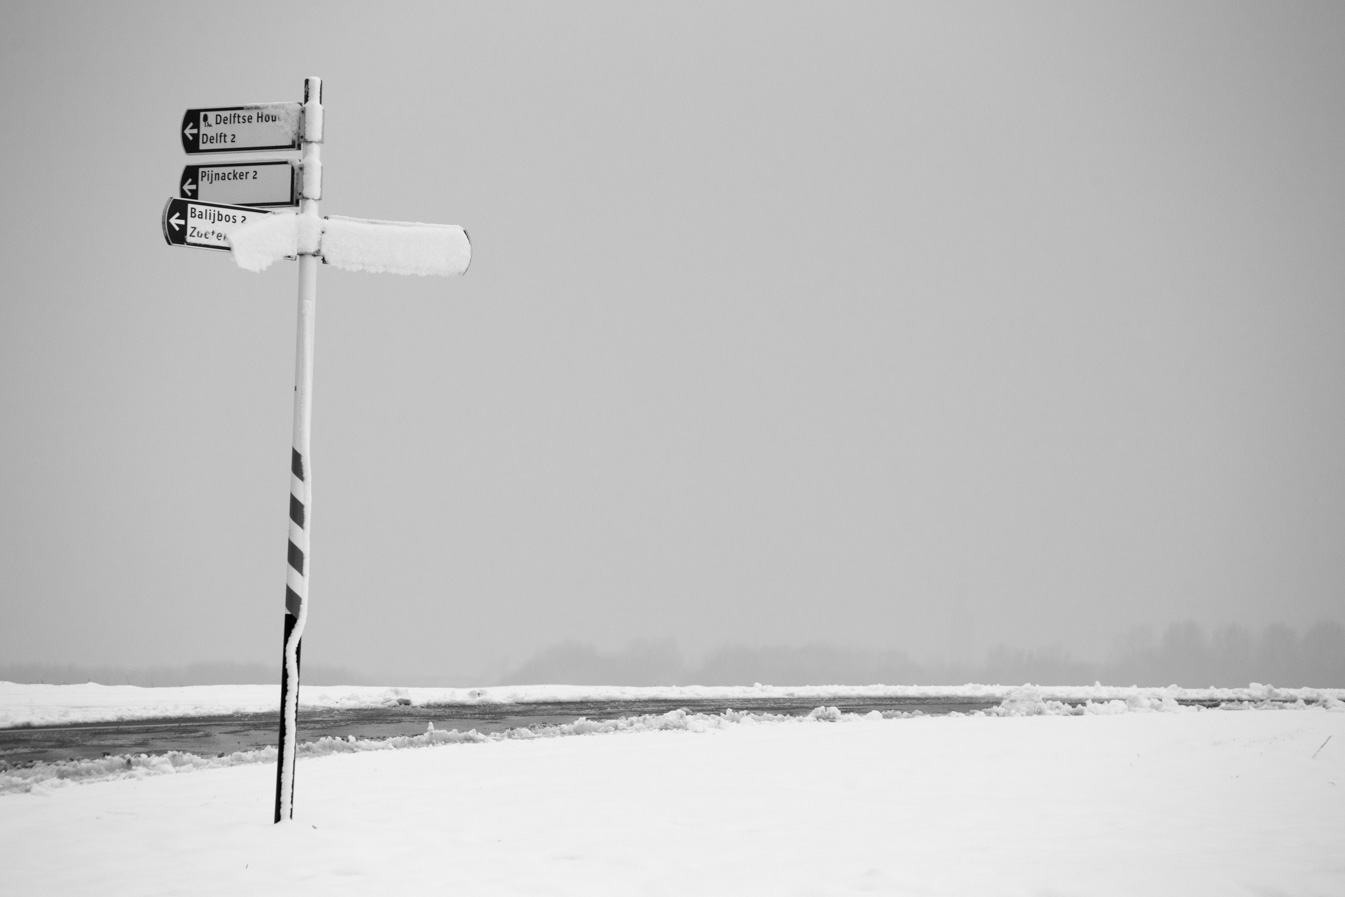 Dobbeplas covered in snow 05.jpg